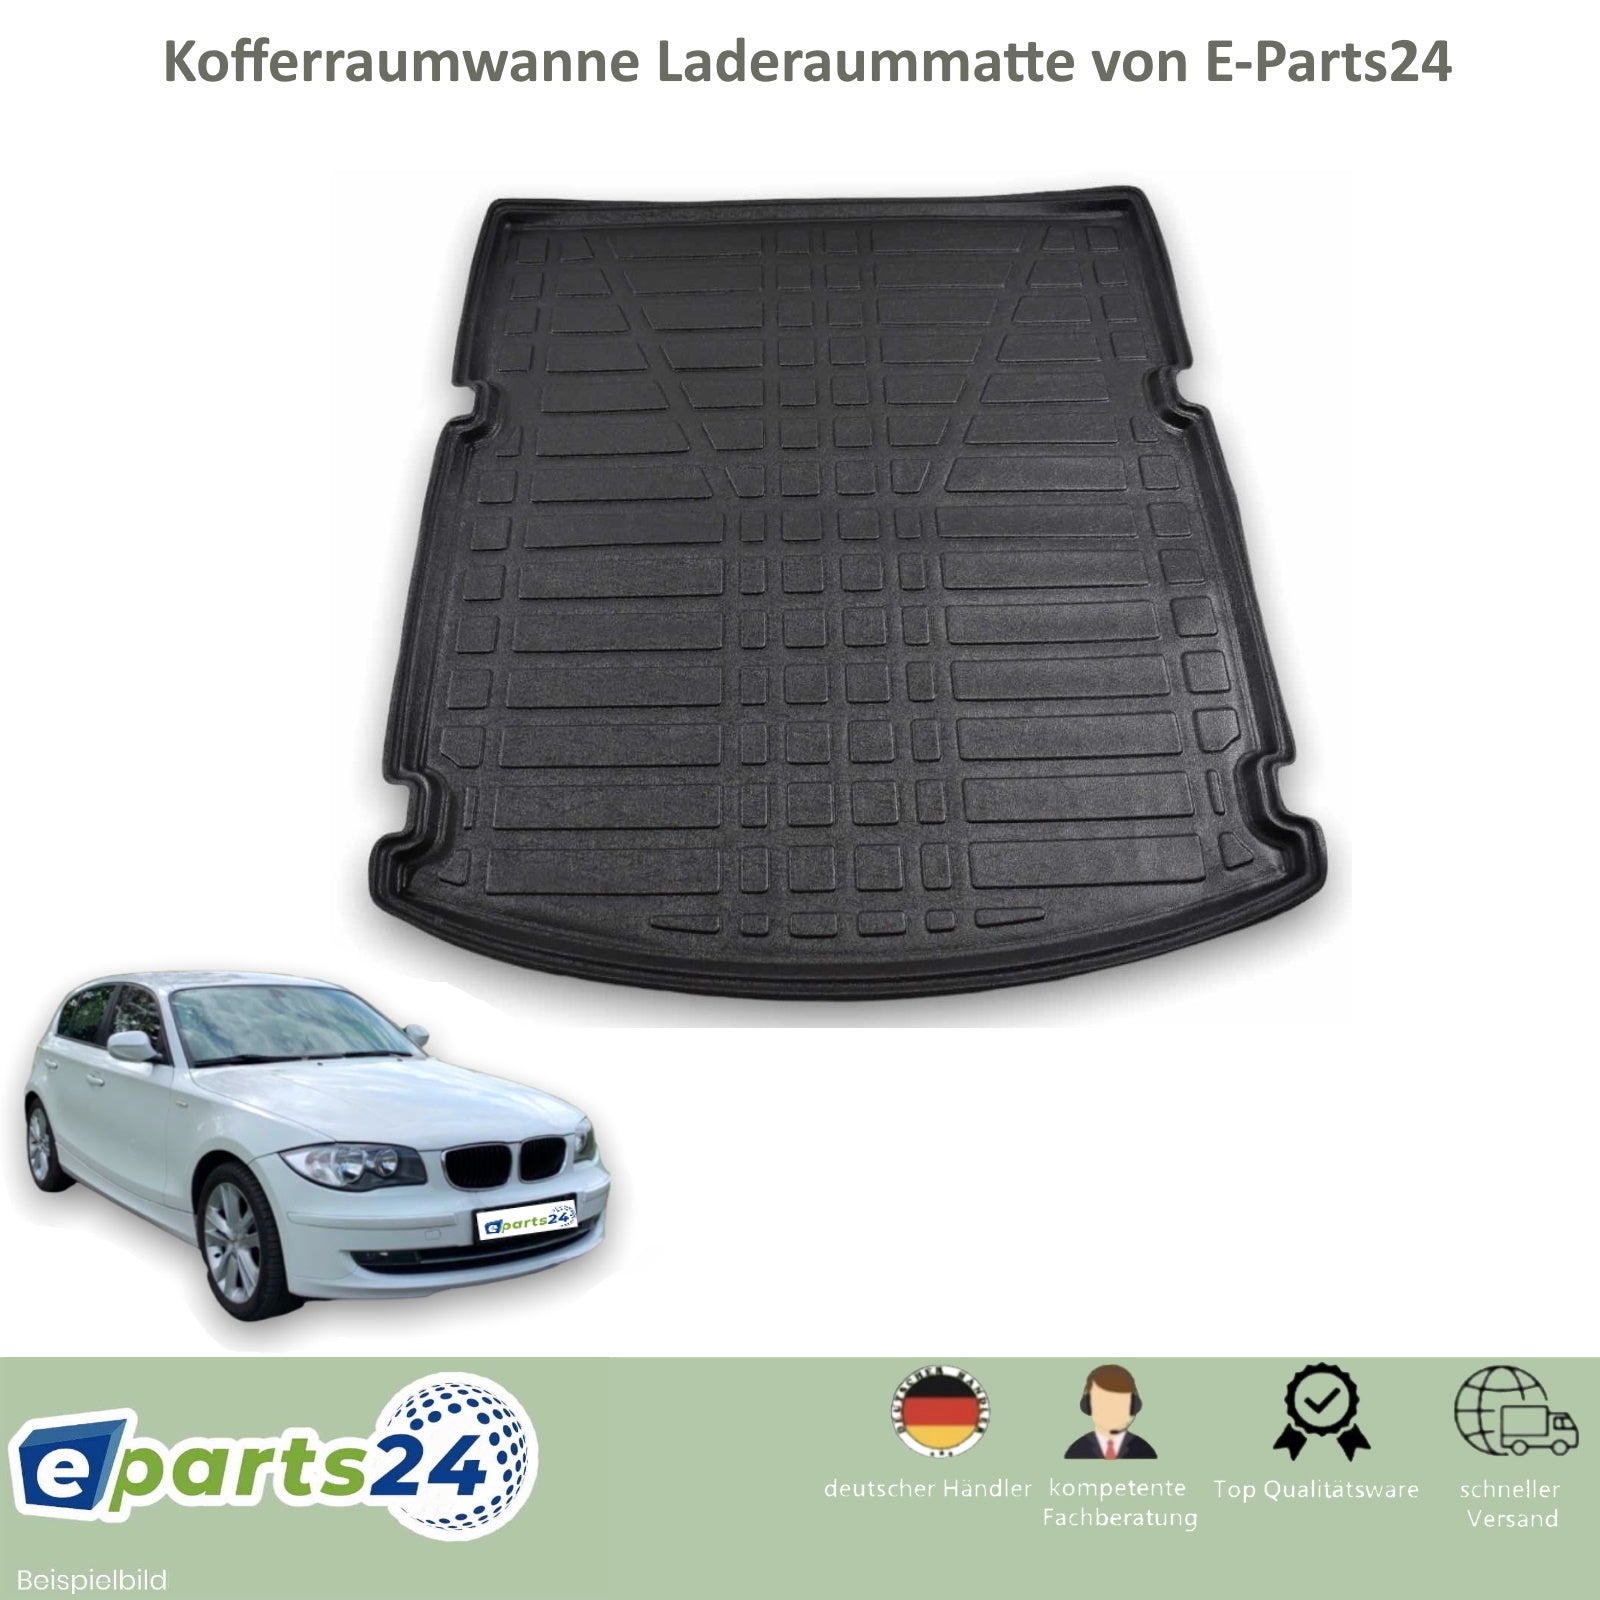 Gummi Kofferraumwanne E87 BMW für Kofferraummatte Laderaumwanne – 20 E-Parts24 1er